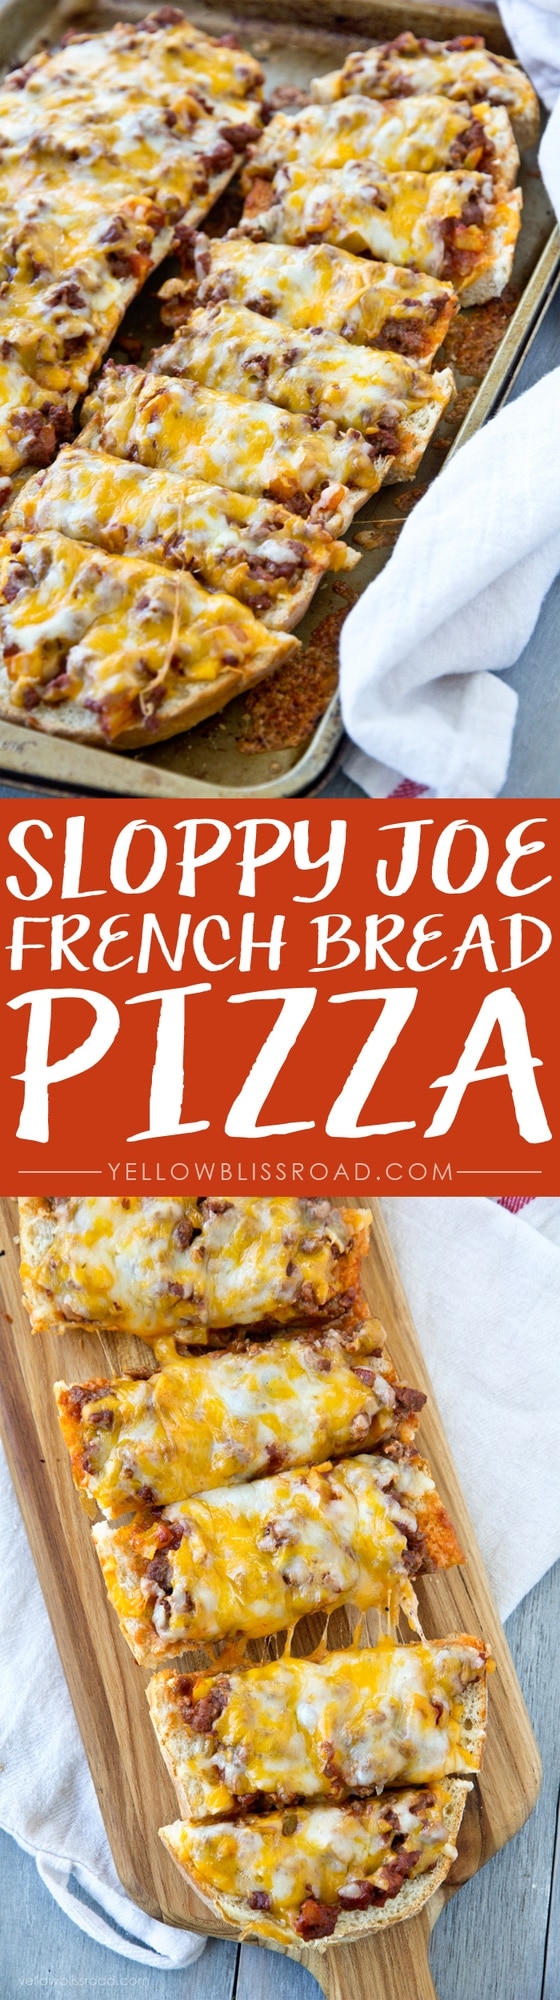 Easy Cheesy and Not too messy Sloppy Joe French Bread Pizza